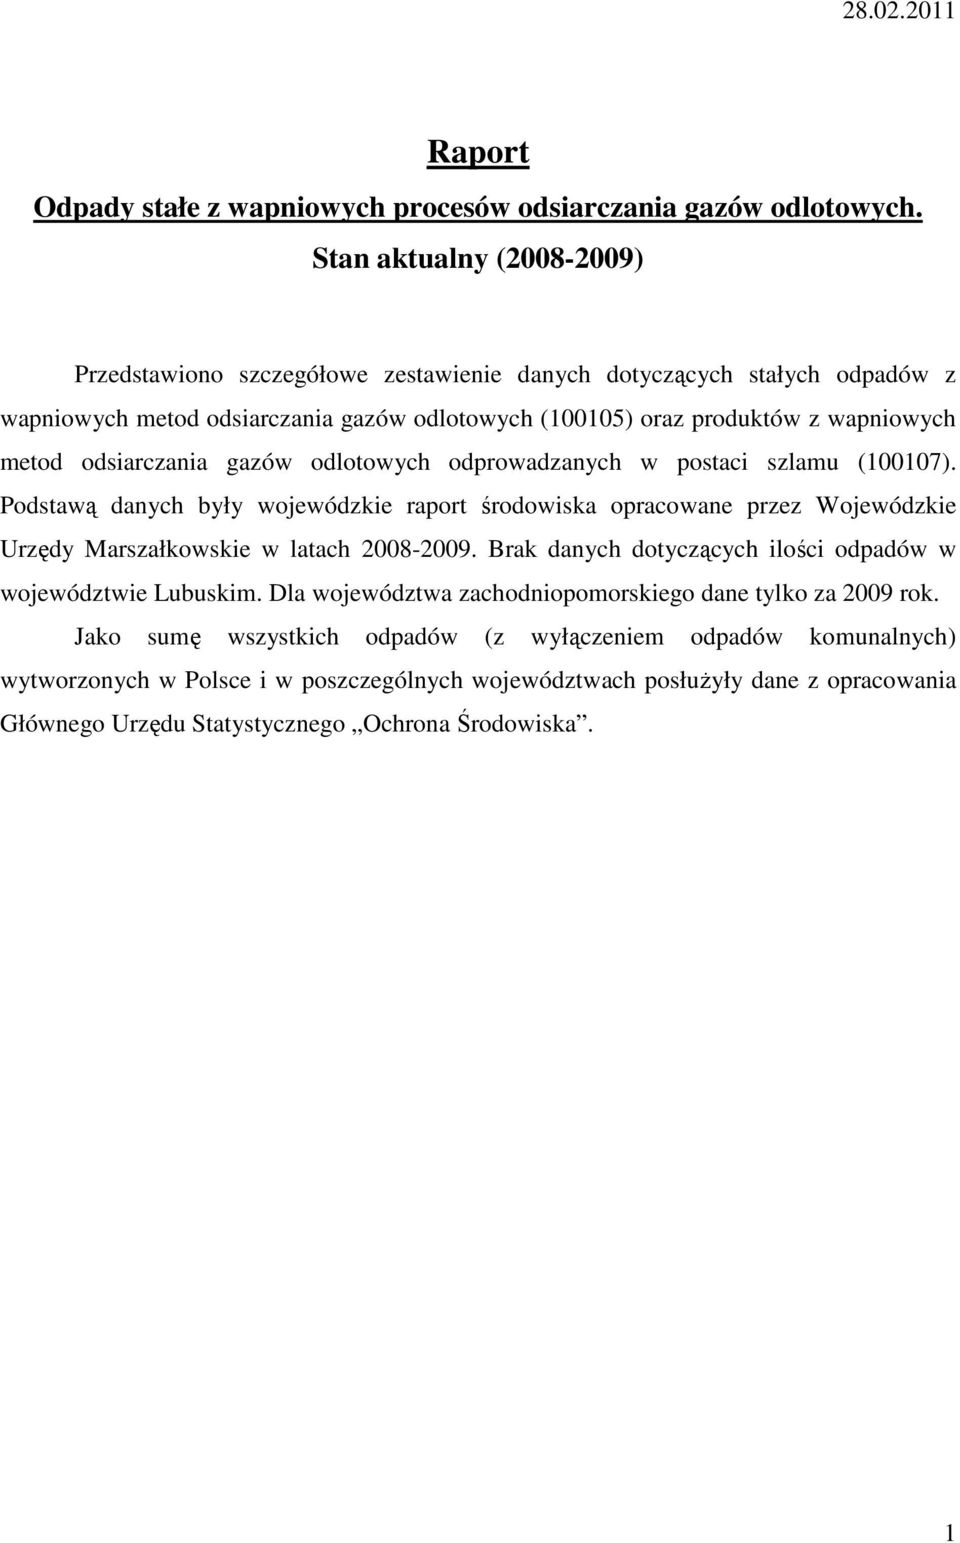 odsiarczania gazów odlotowych odprowadzanych w postaci szlamu (100107). Podstawą danych były wojewódzkie raport środowiska opracowane przez Wojewódzkie Urzędy Marszałkowskie w latach 2008-2009.